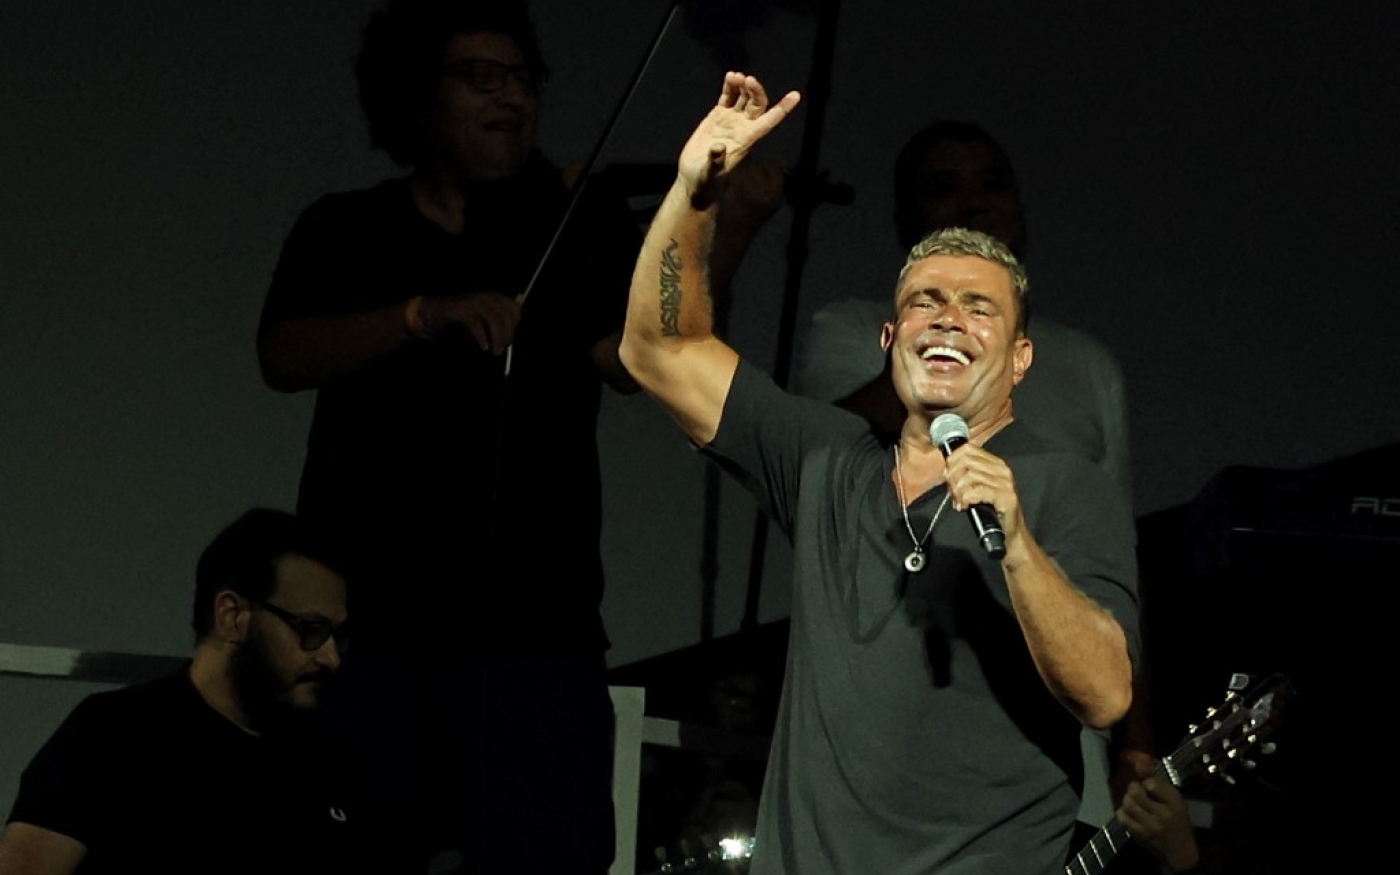 Des chanteurs comme Amr Diab sont populaires dans le monde arabe mais peinent à percer sur d’autres marchés (Amro Maraghi/AFP)